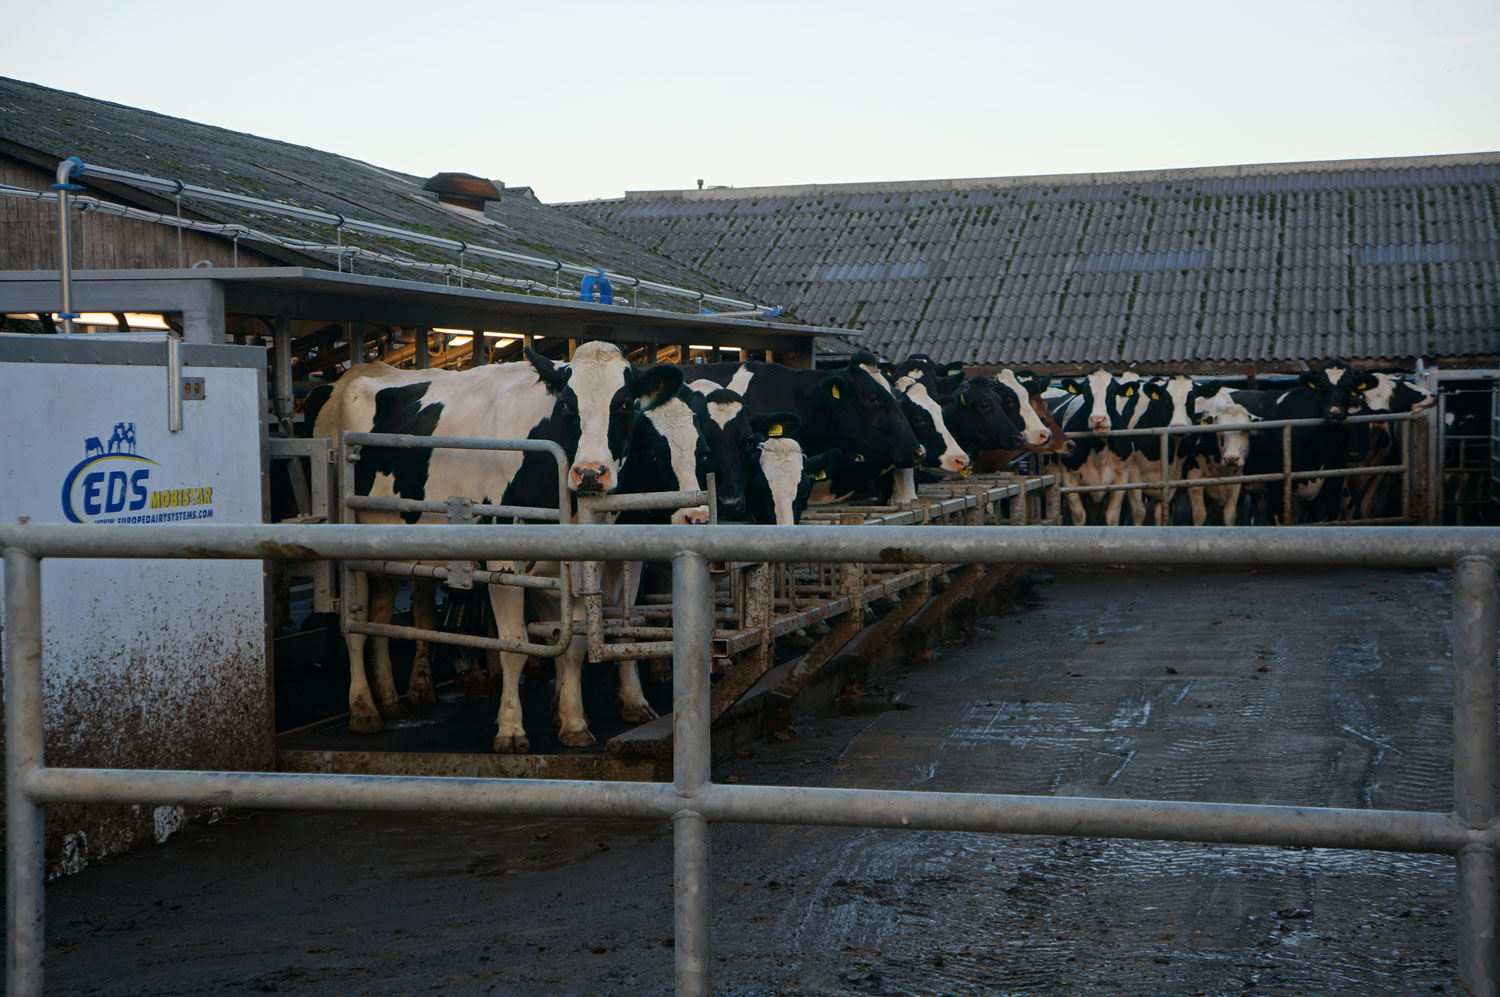 Outdoor milking